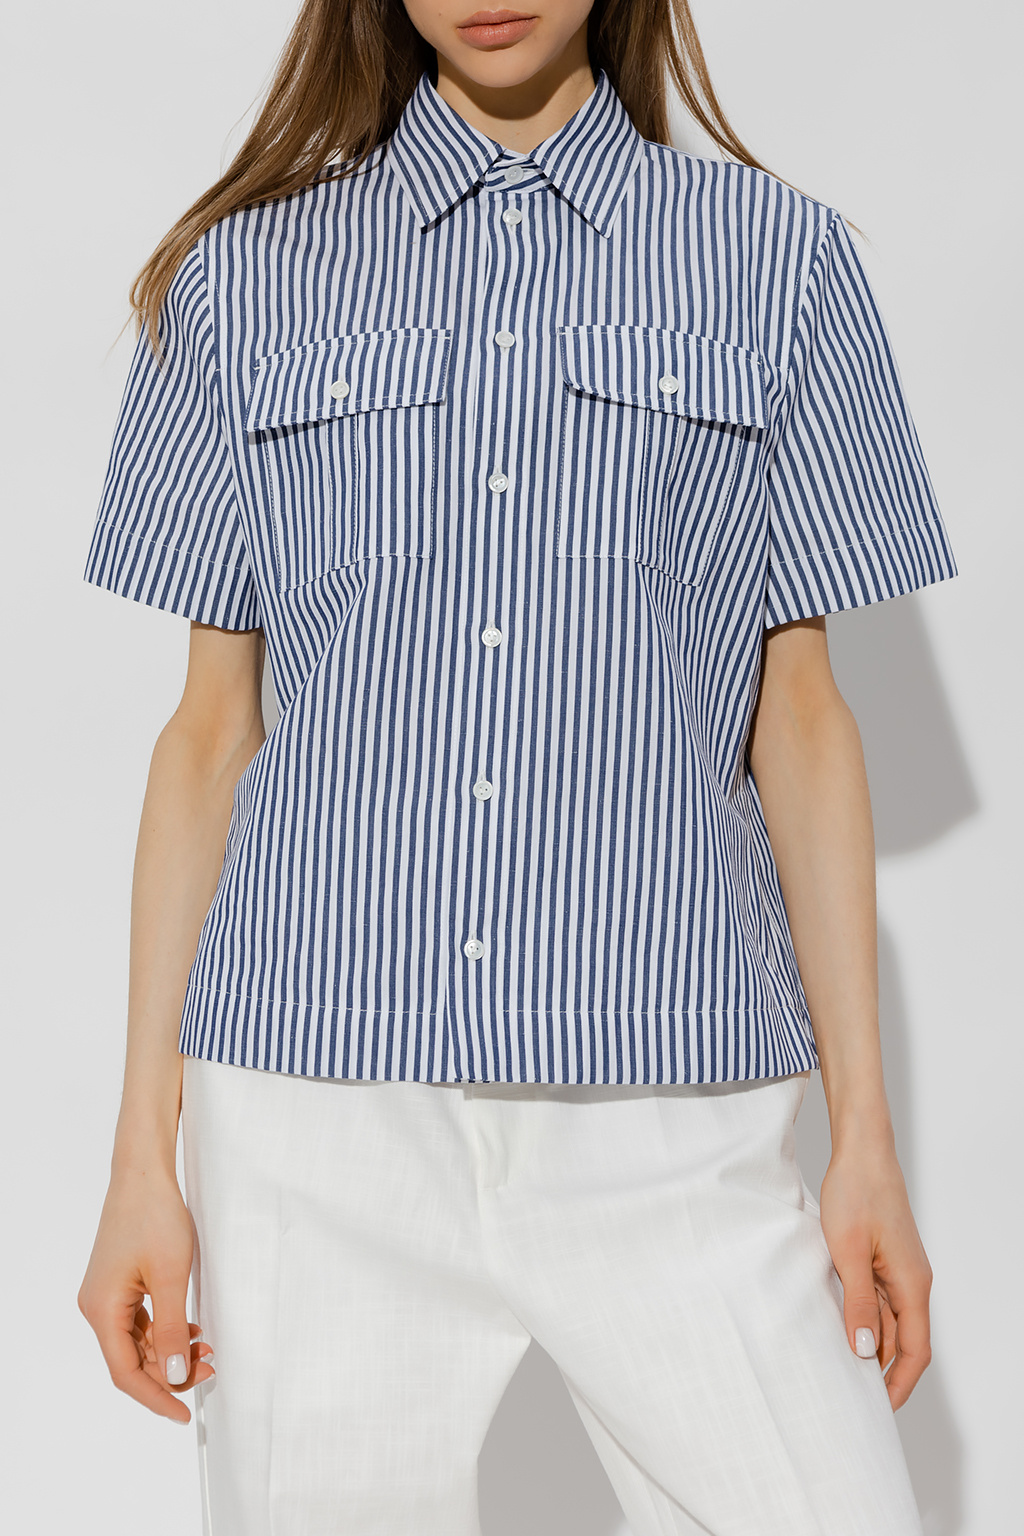 Bottega Veneta Short-sleeved shirt